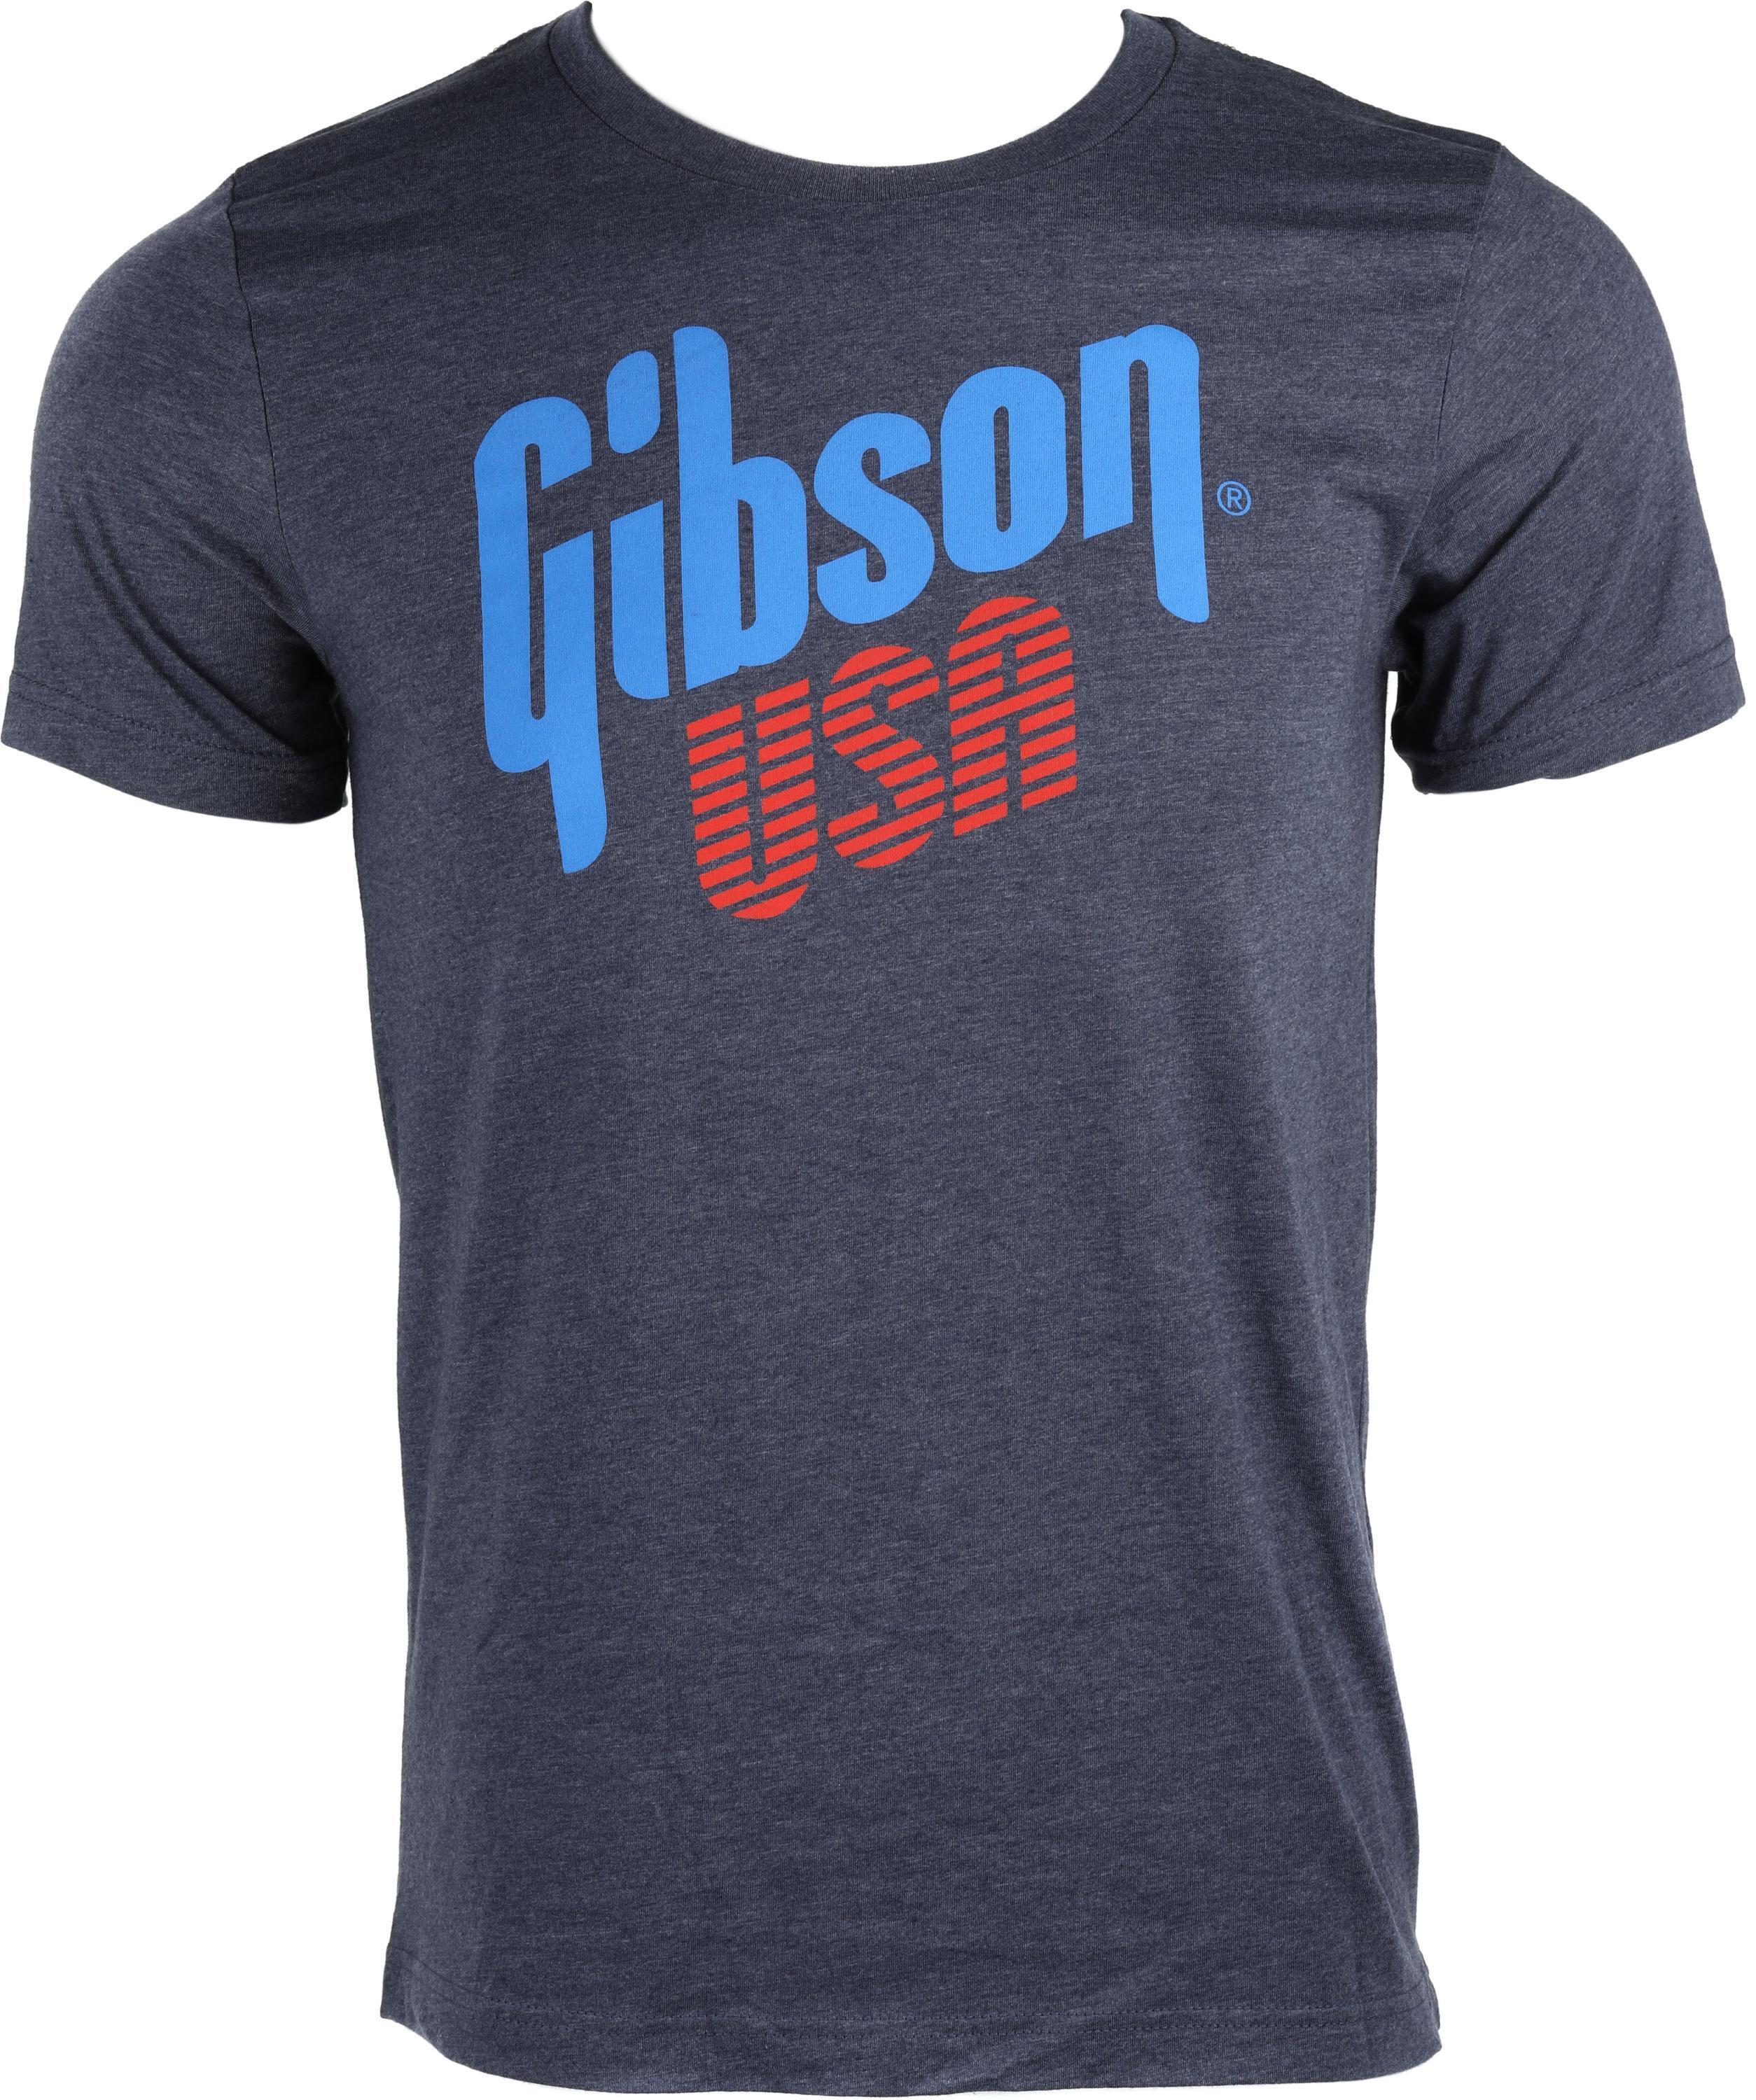 Banner Tee Medium - M T-shirt Gibson